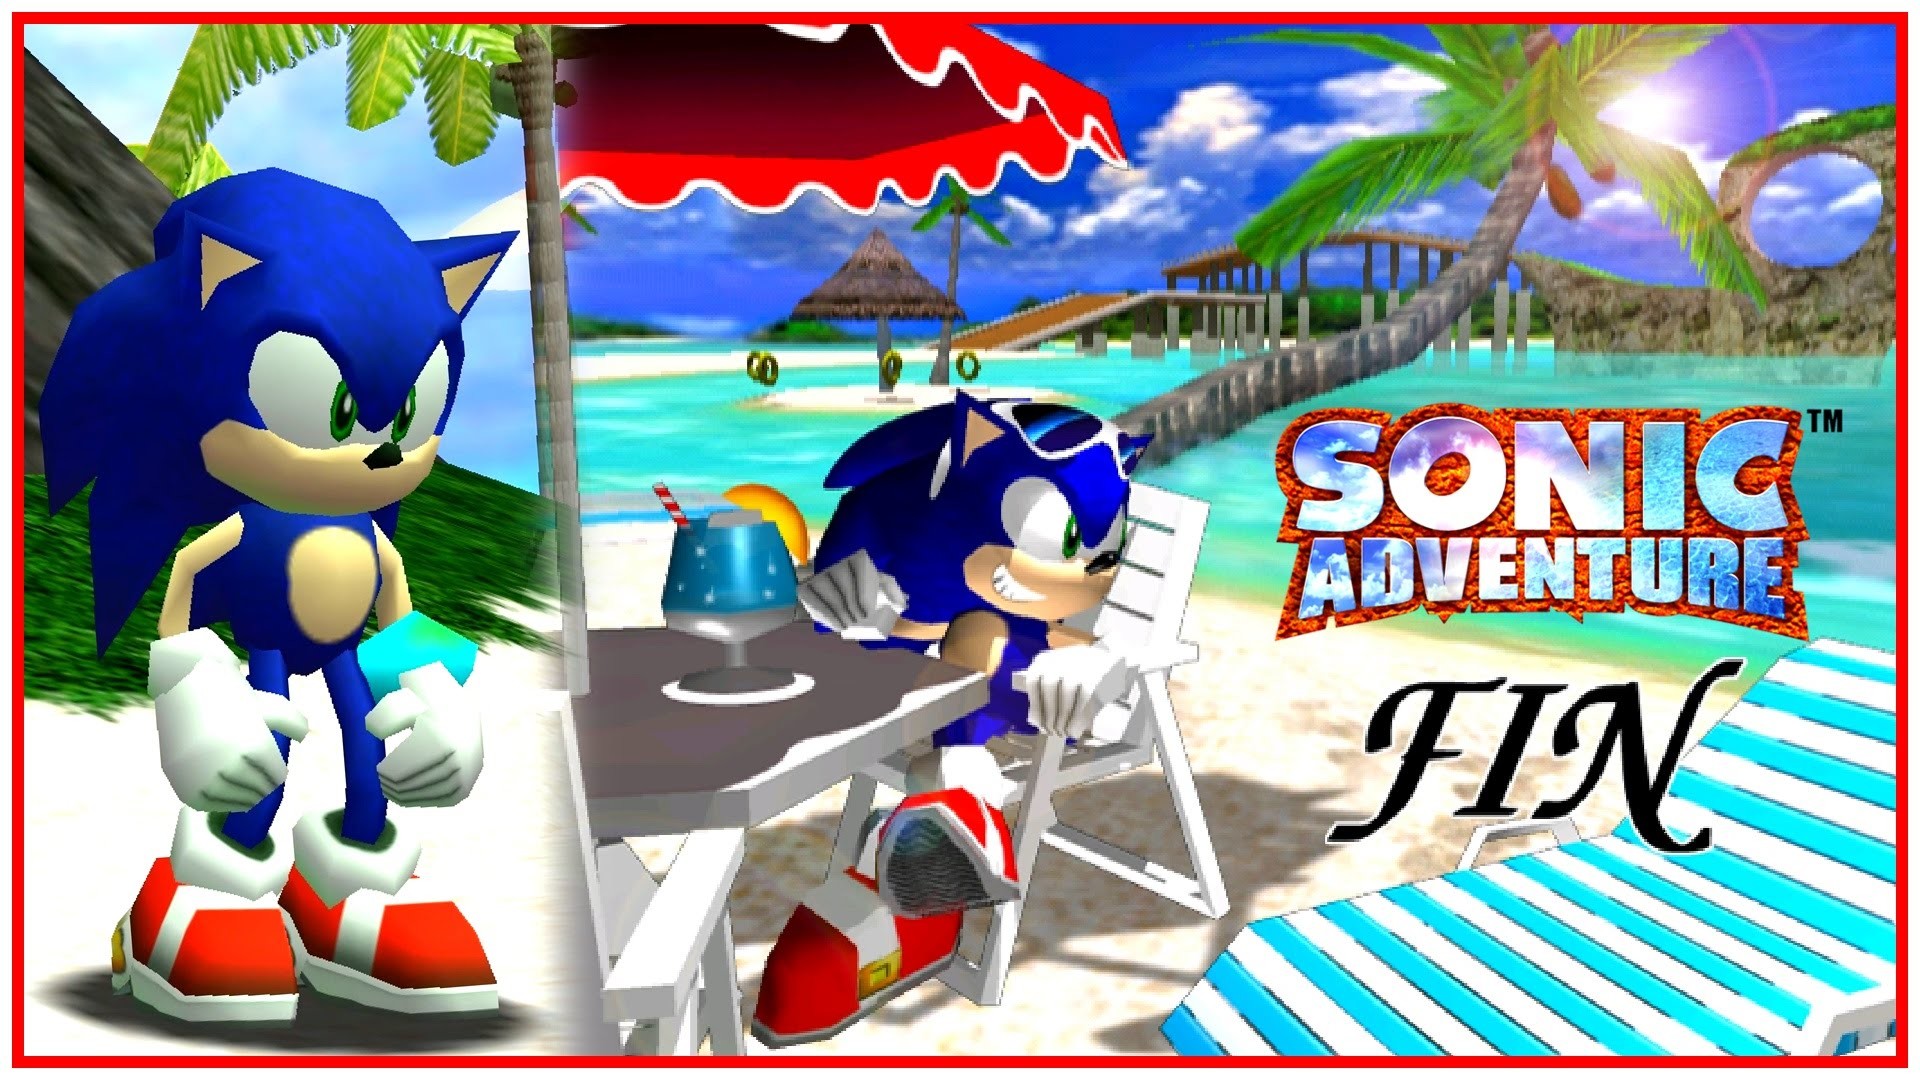 Sonic adventure dreamcast на русском. Sega Dreamcast Sonic Adventure 1. Sega Dreamcast Sonic. Sonic Adventure (Dreamcast; 1998). Sonic Adventure Dreamcast обложка.